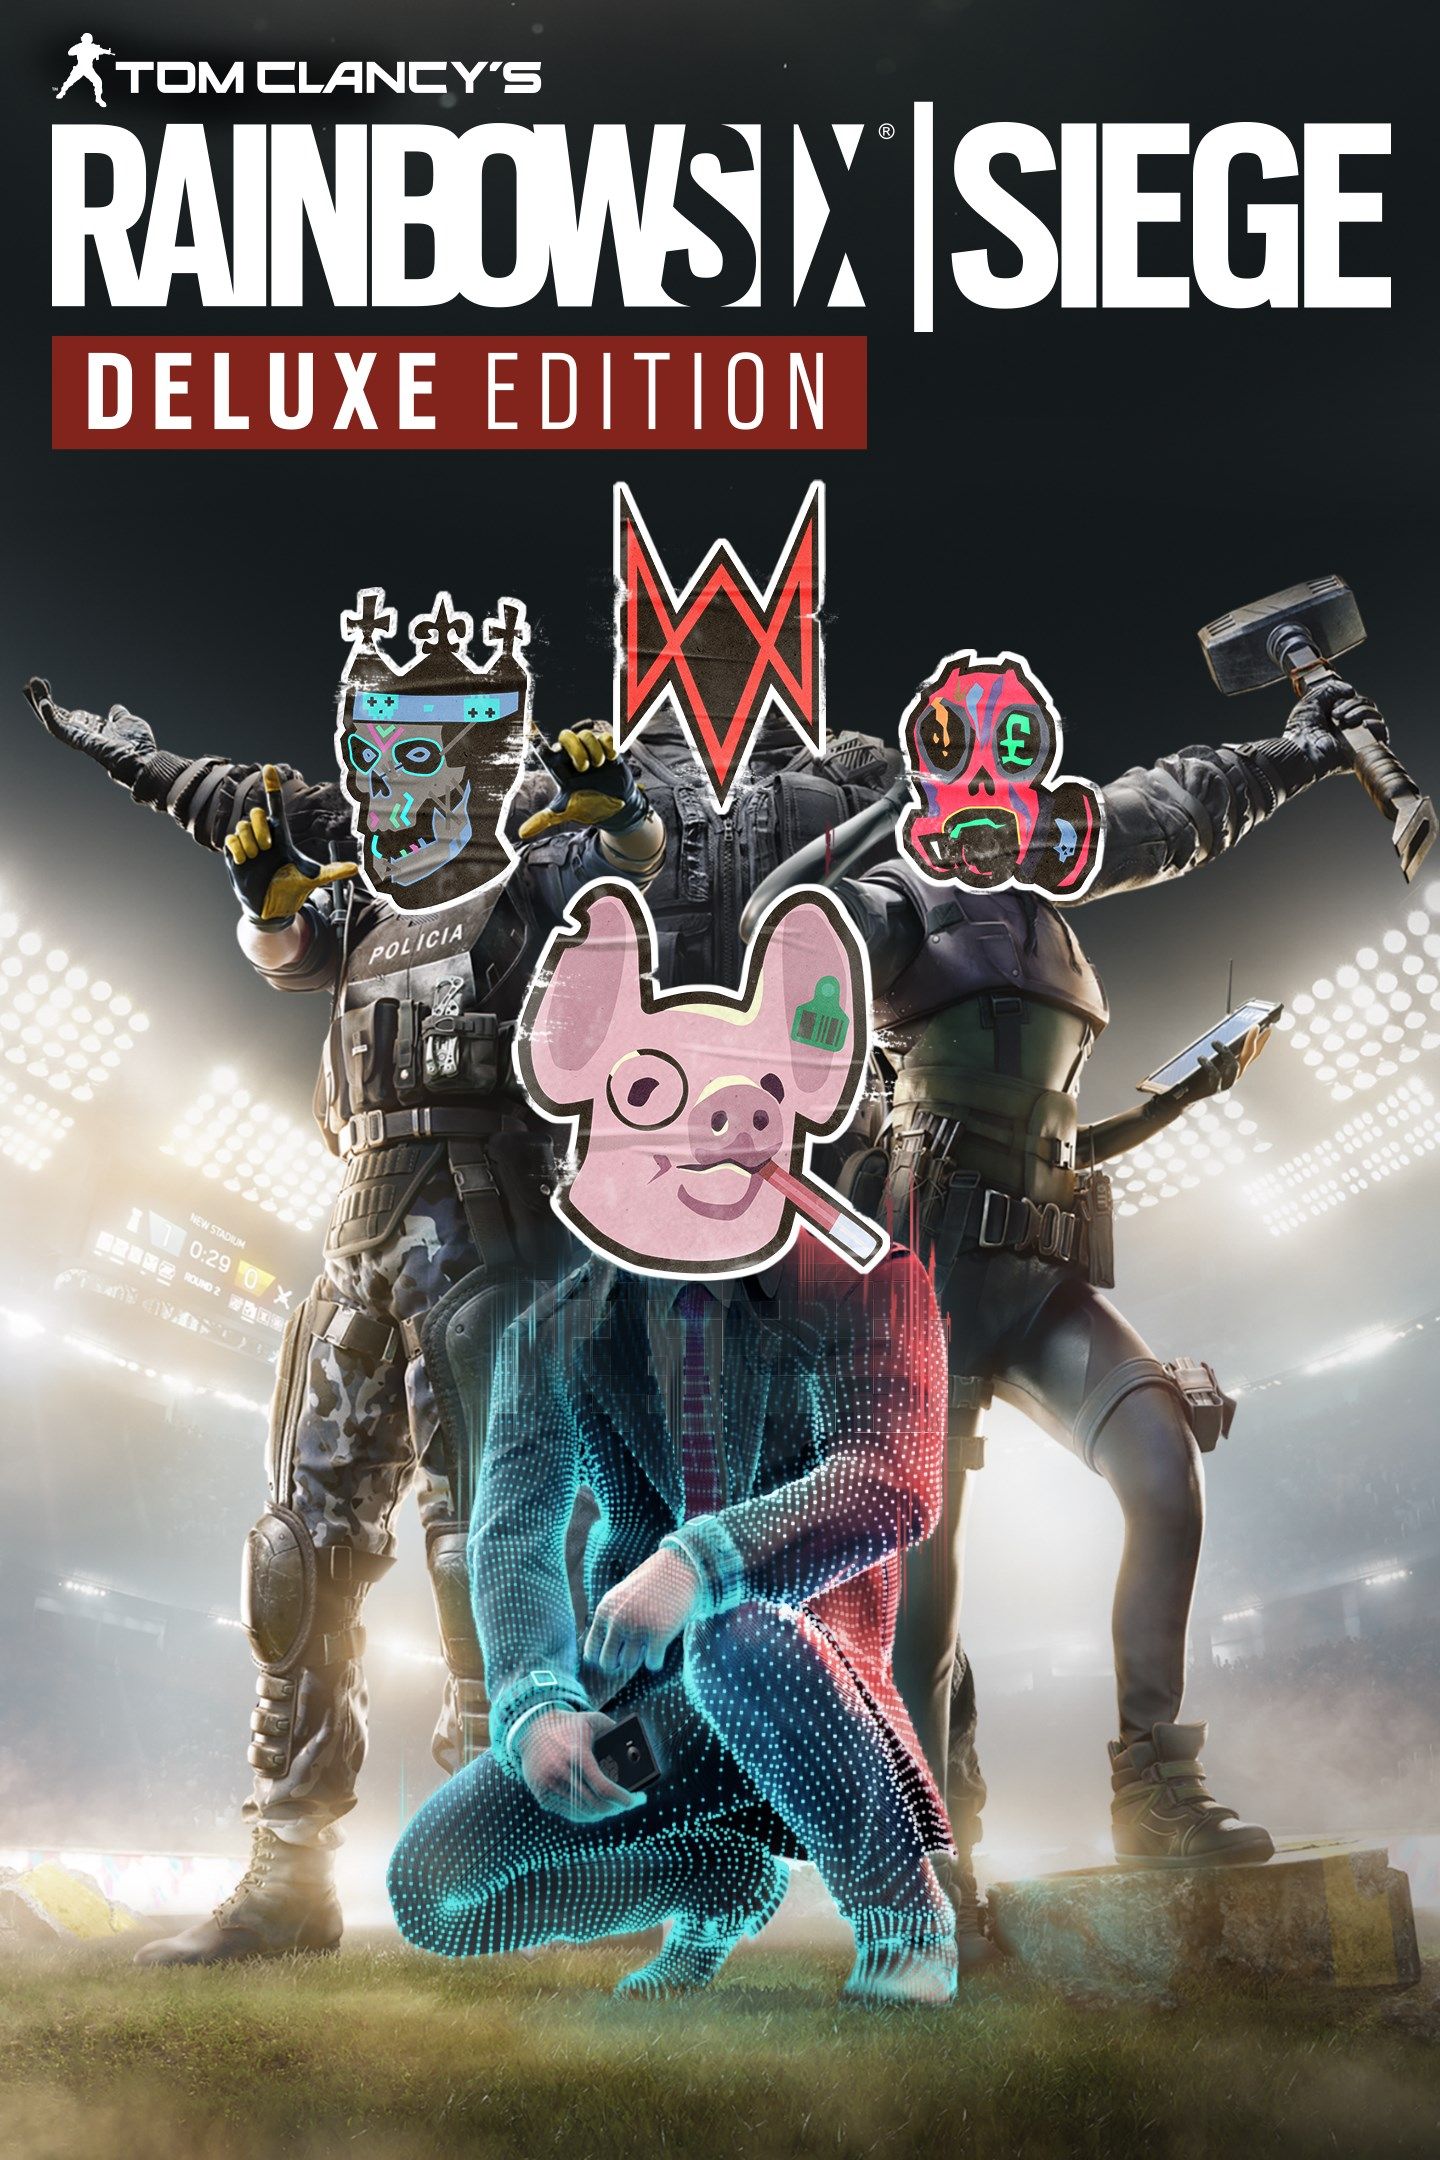 Измененная обложка Rainbow Six Siege Deluxe Edition.
Источник: Microsoft Store